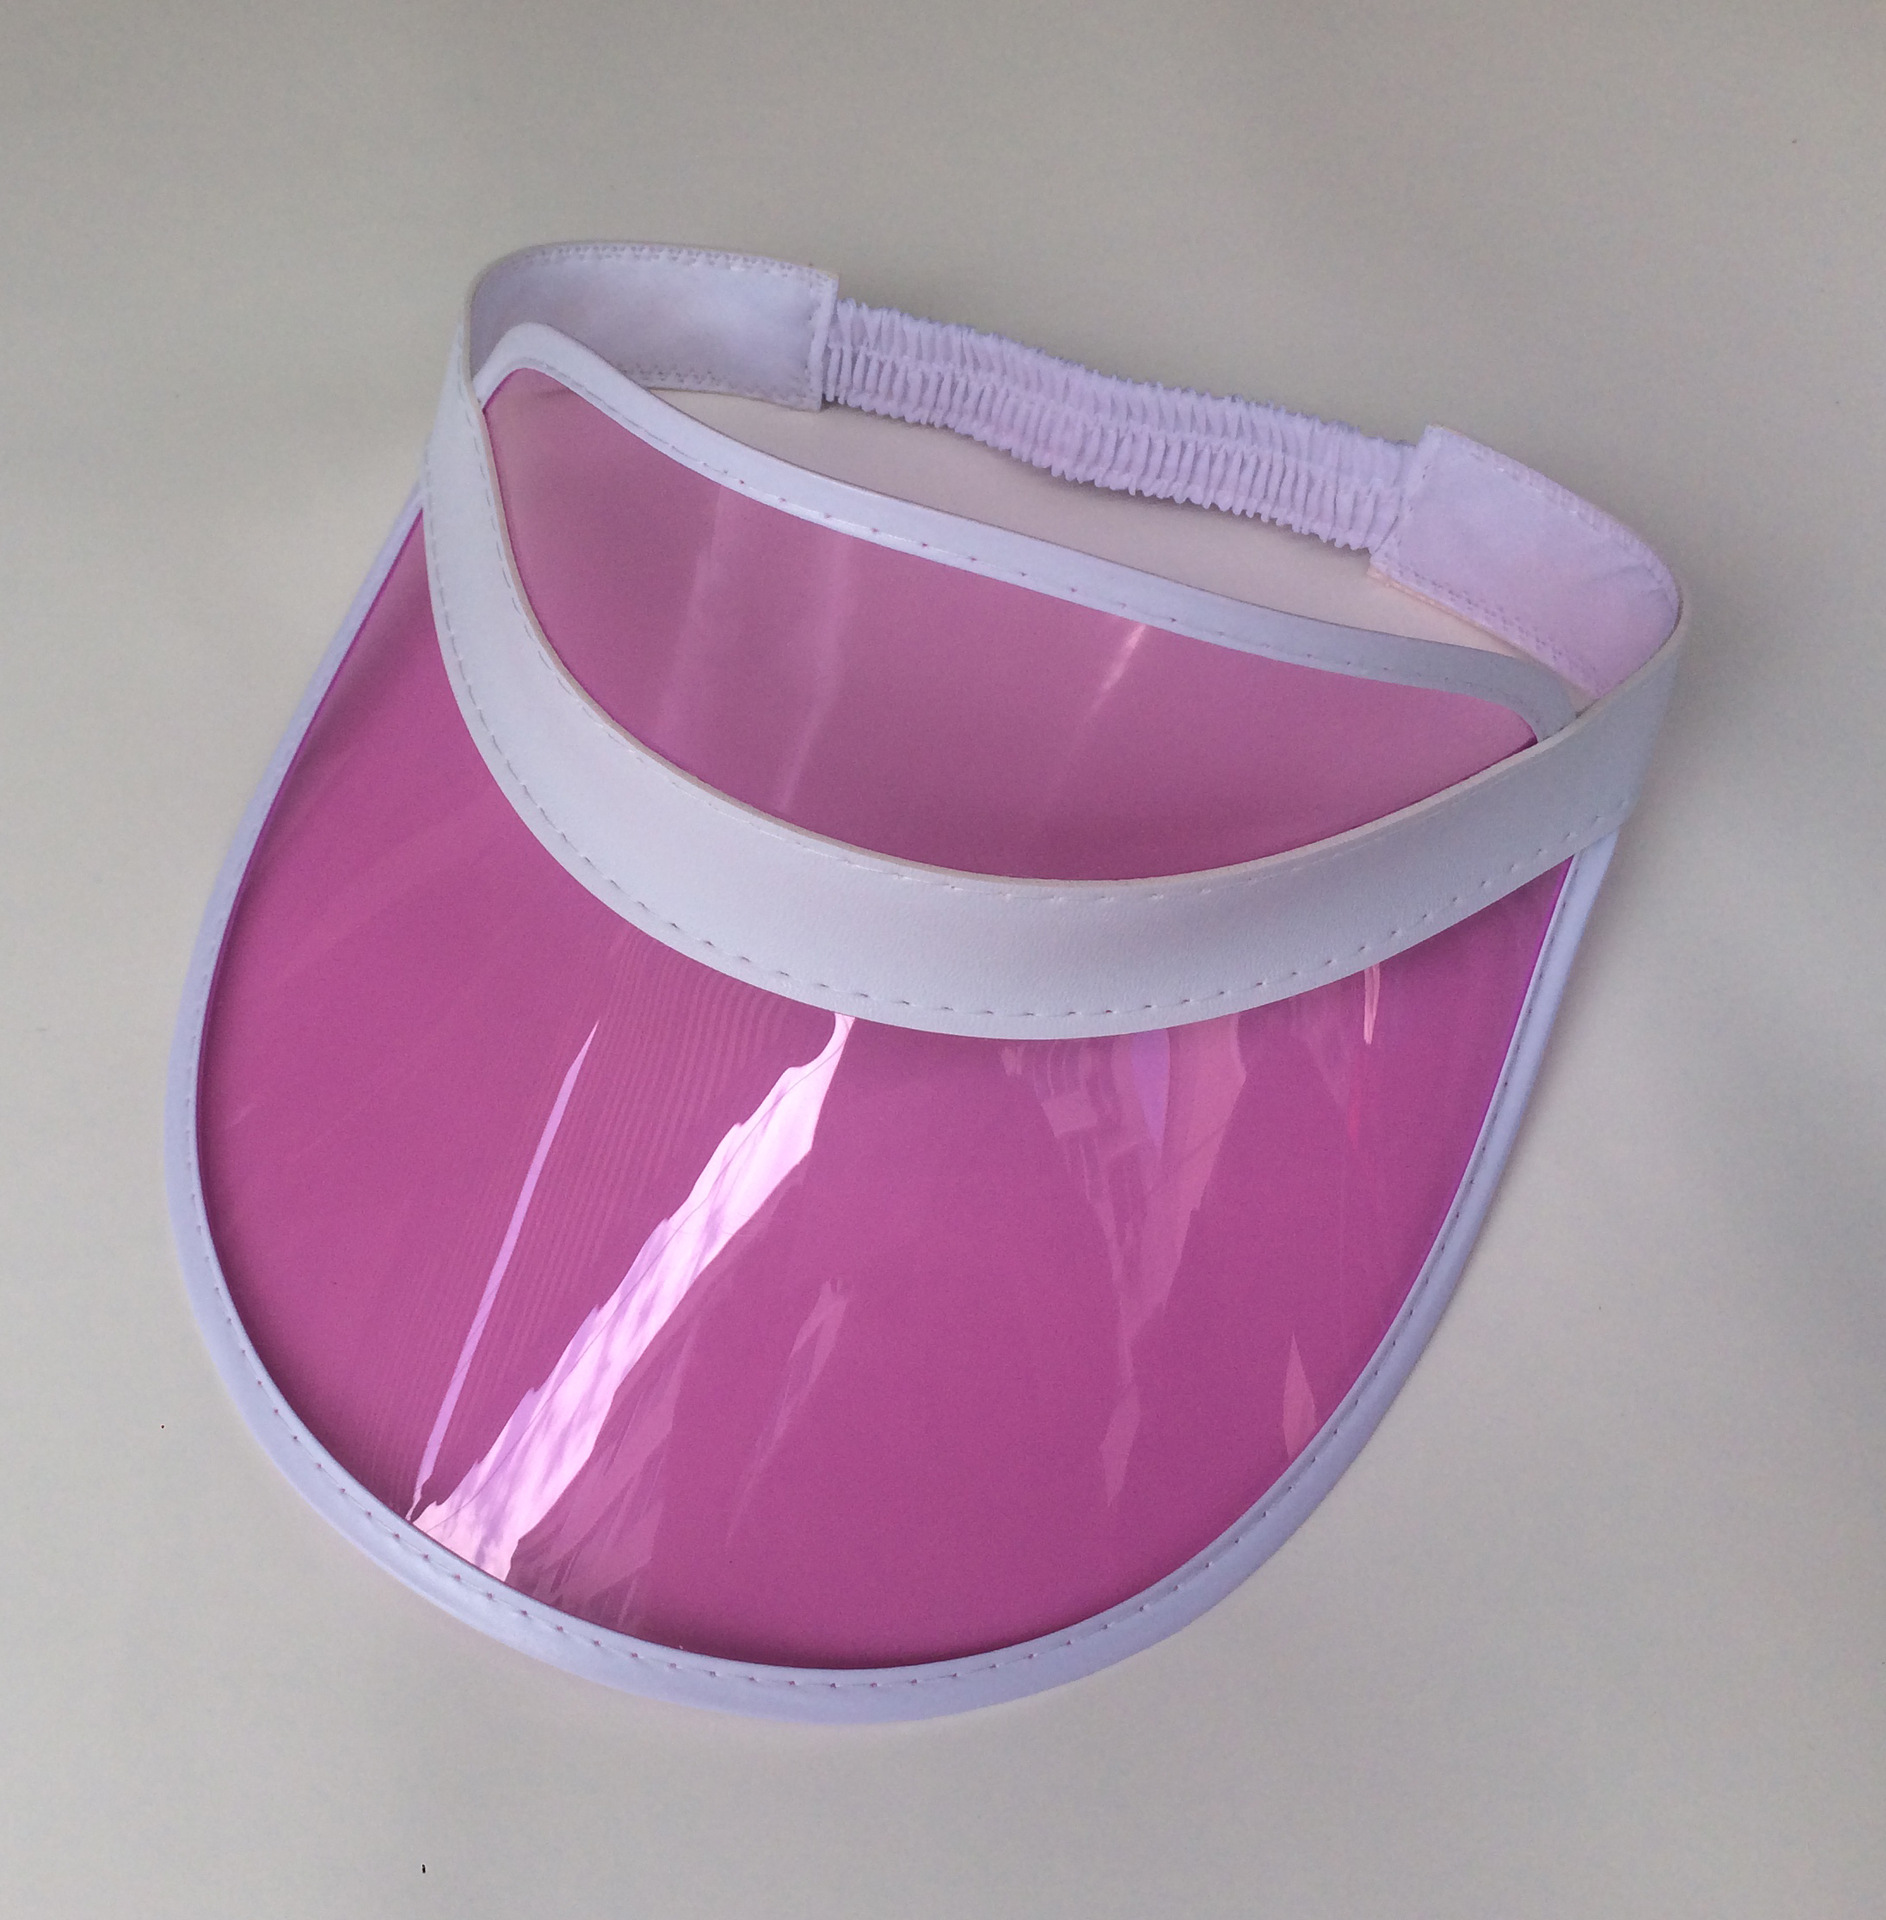 增加UV紫外功能空顶帽(CAP)10种颜色供挑选材质都可过环保测试